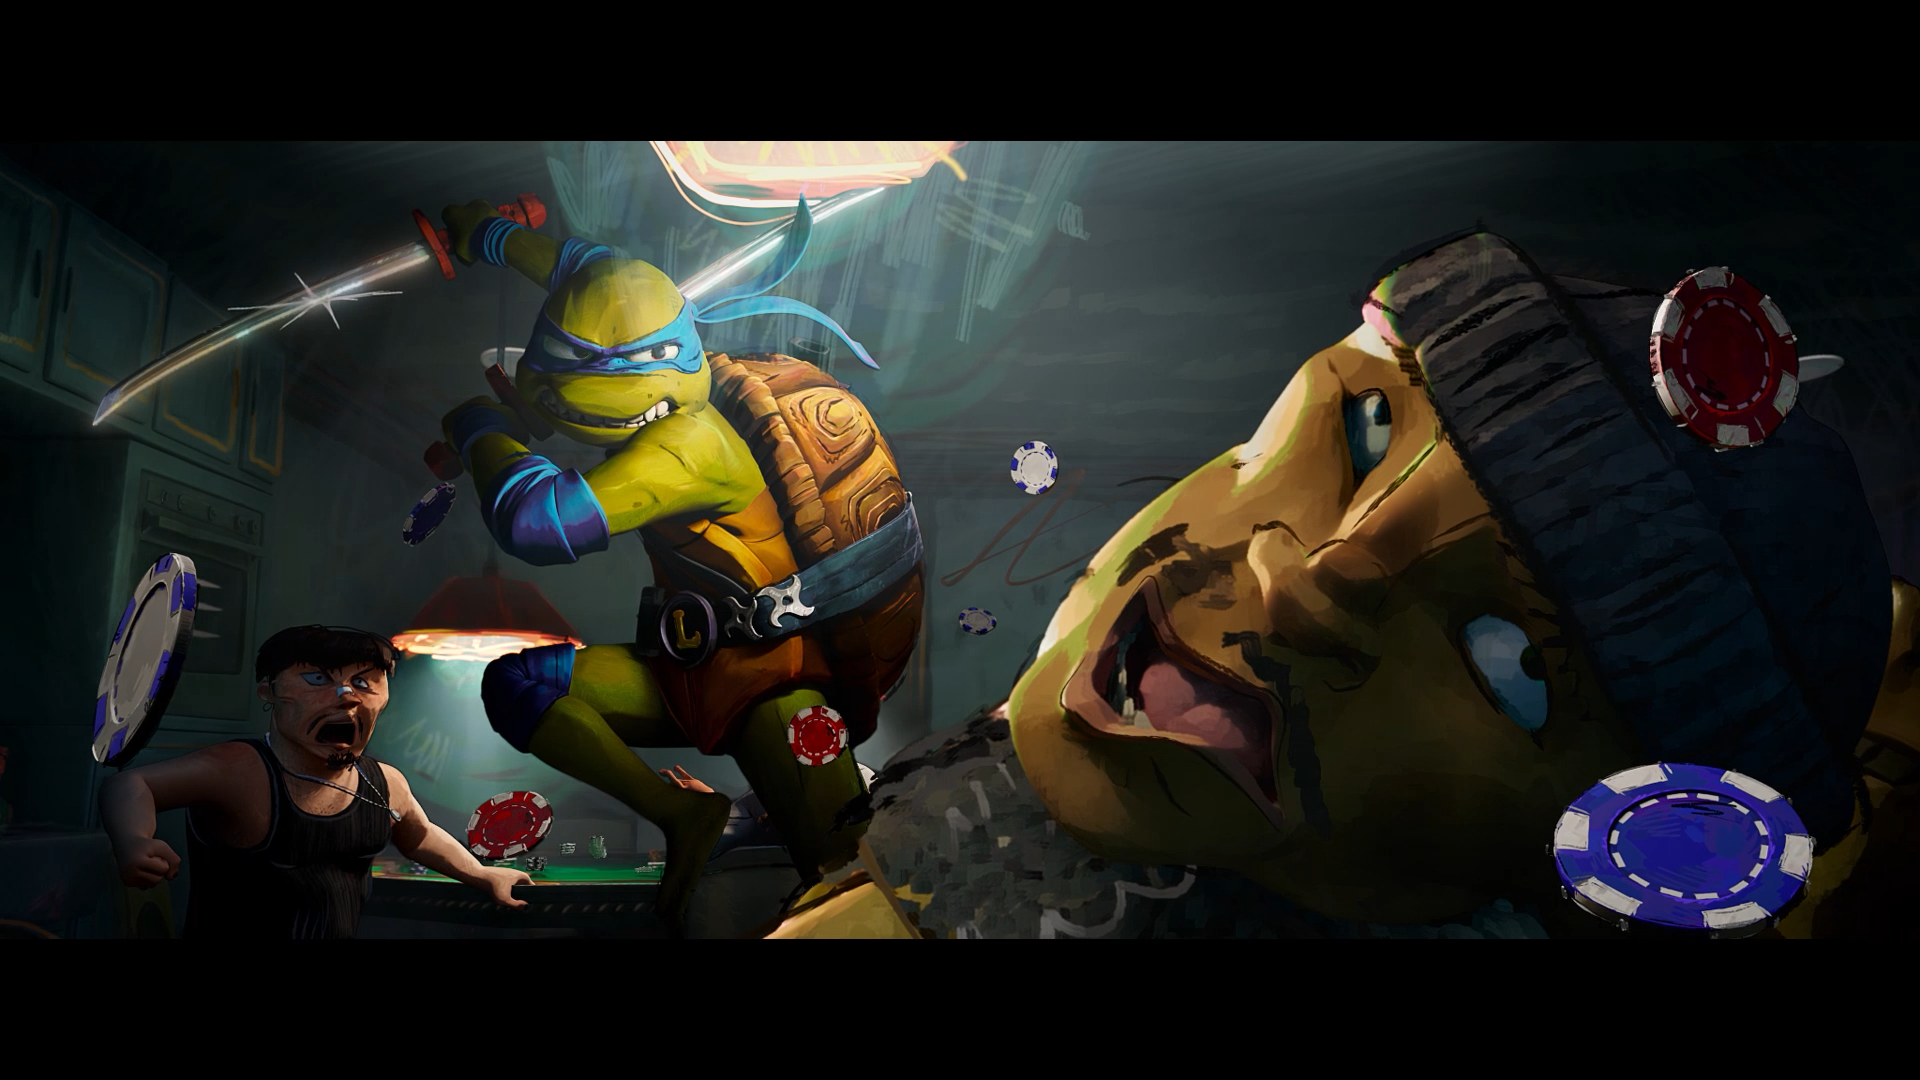 Teenage Mutant Ninja Turtles TMNT: Mutant Mayhem